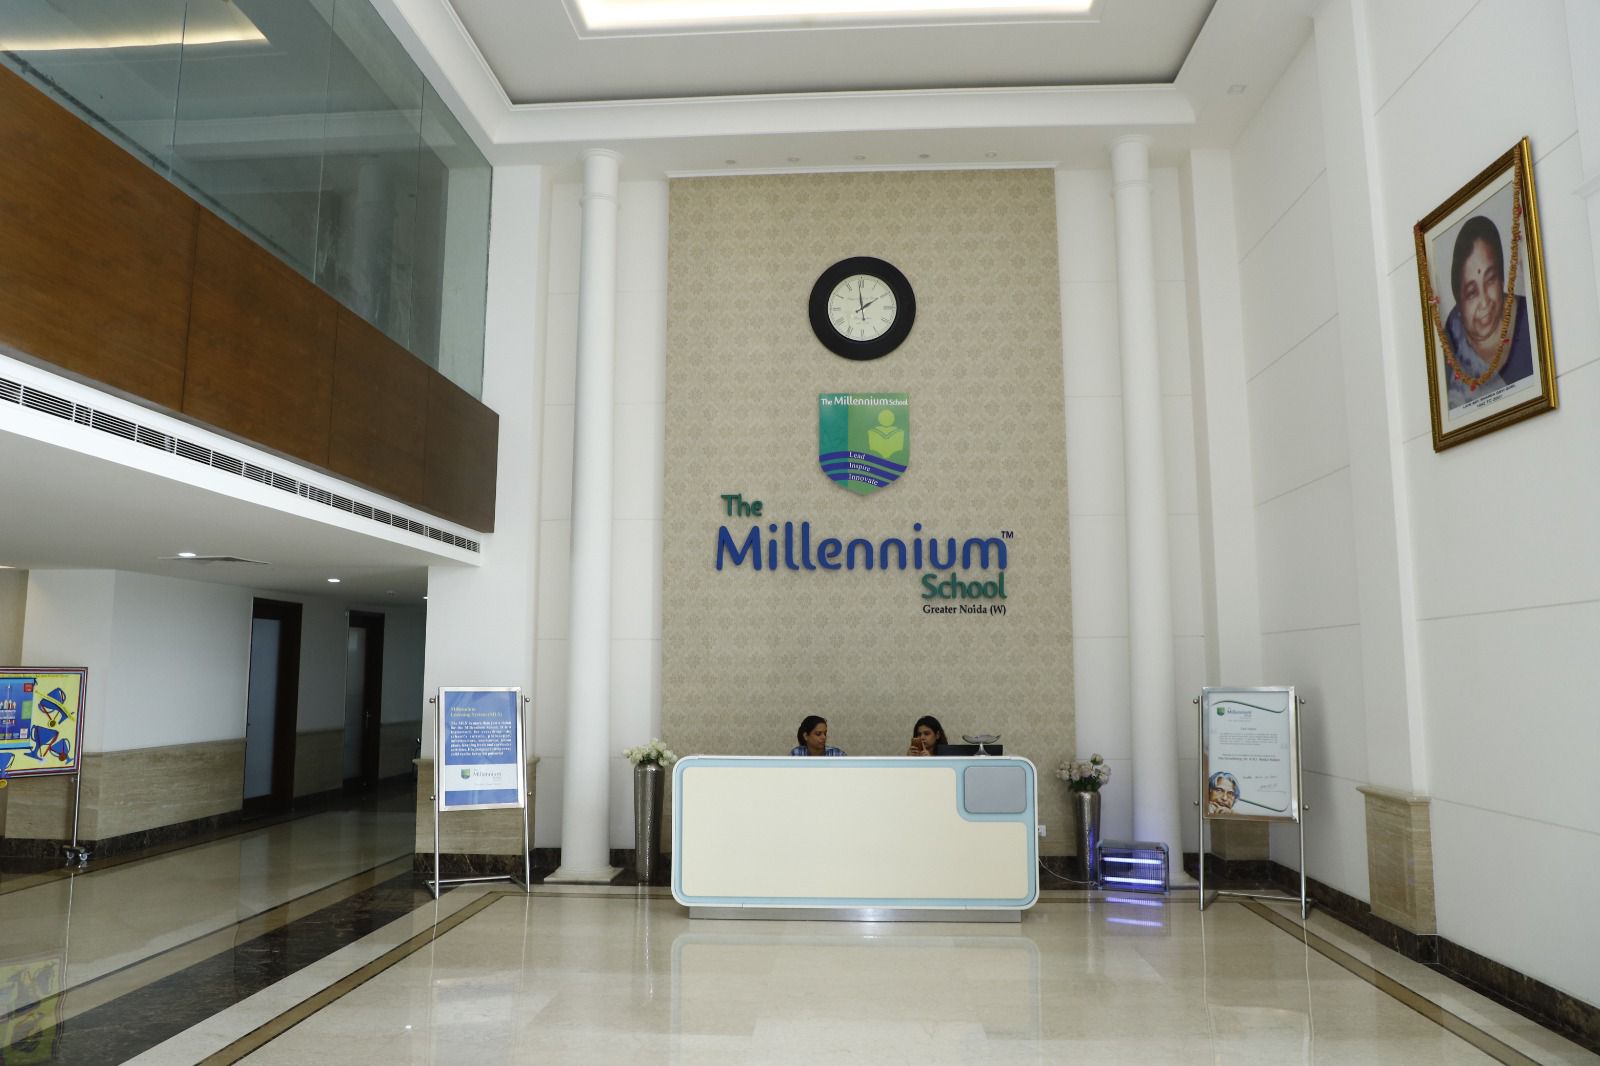 The Millenium School